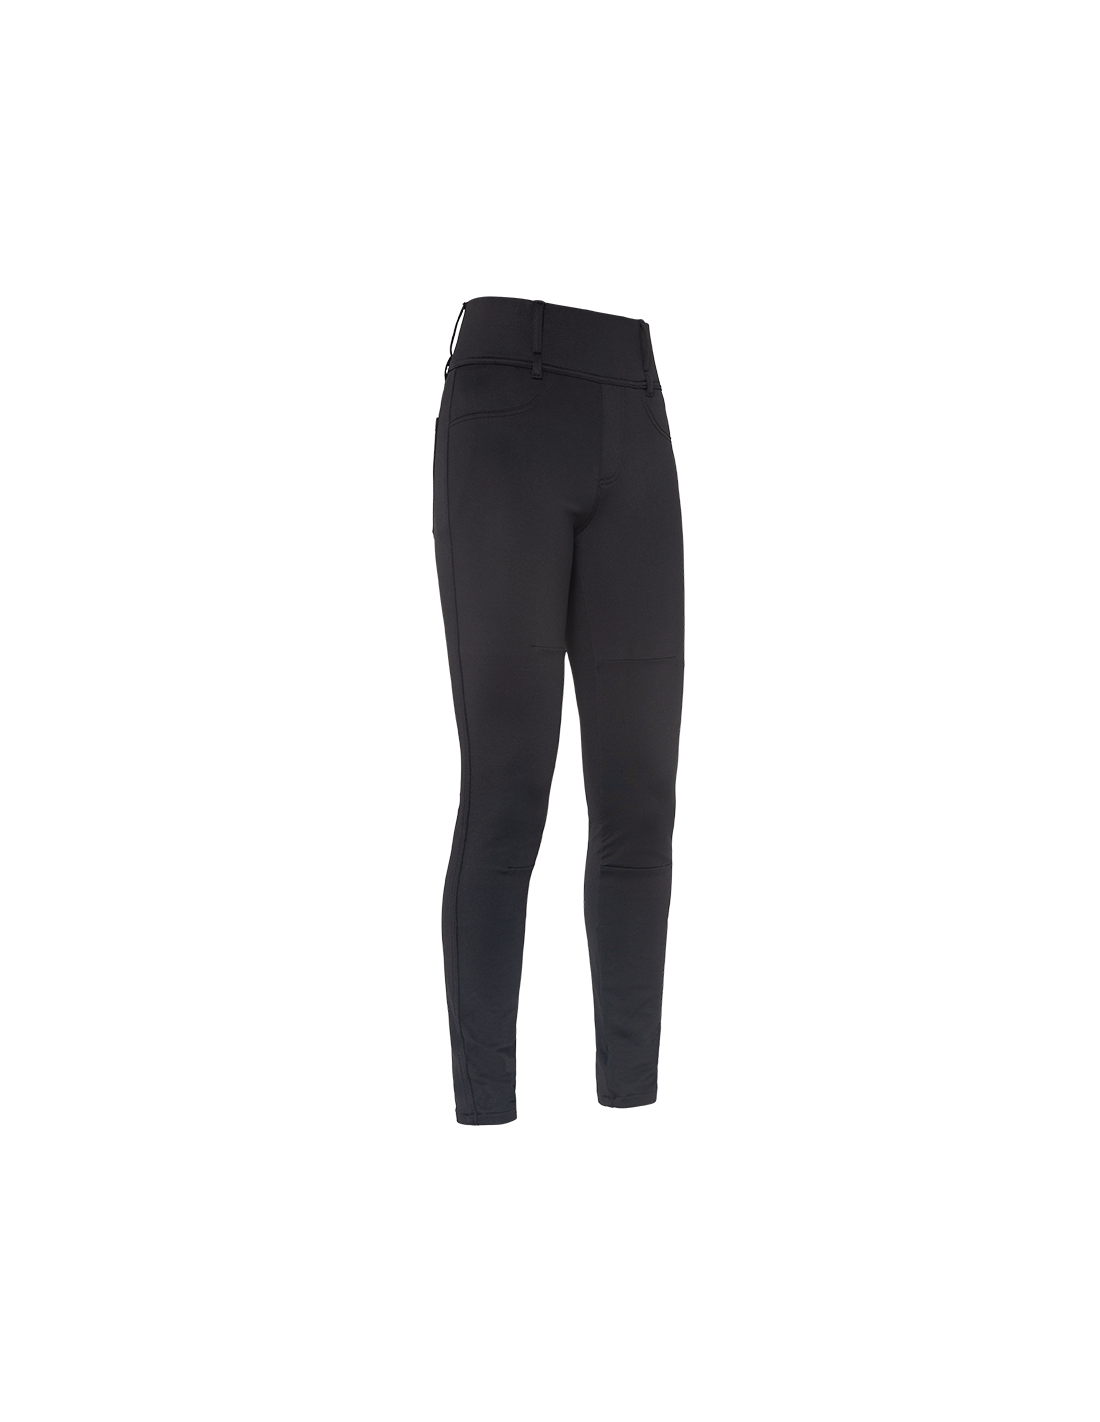 https://www.bobber-store.com/42436-thickbox_default/john-doe-ladies-leggings-jeggy-black-xtm.jpg